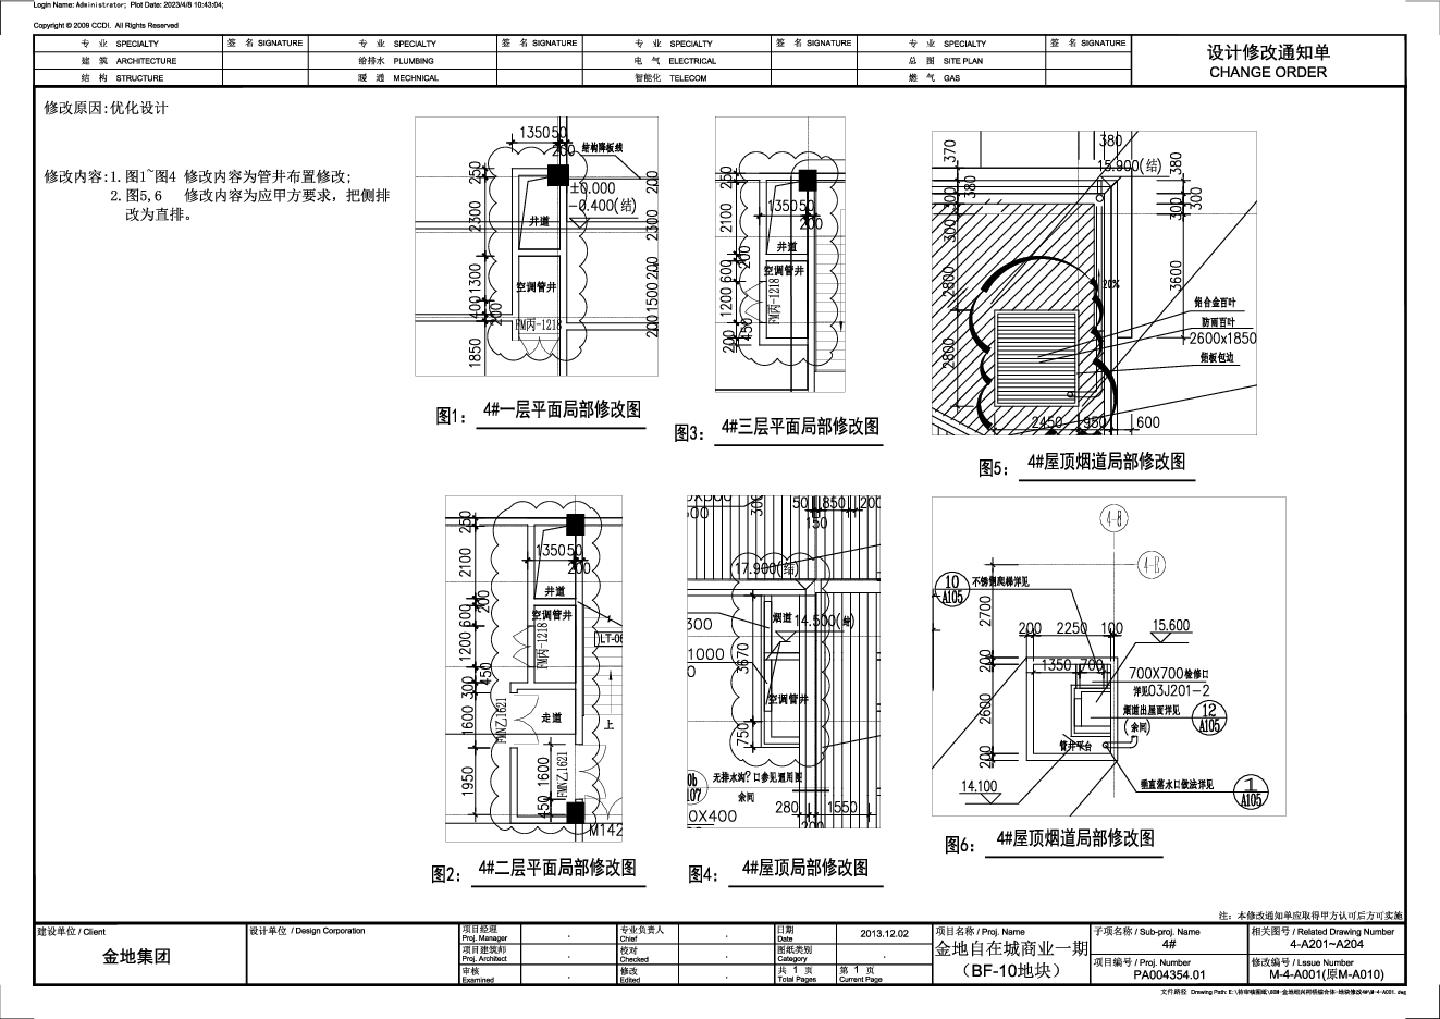 金地自在城商业一期（BF-10地块）-4号楼局部修改详图CAD图